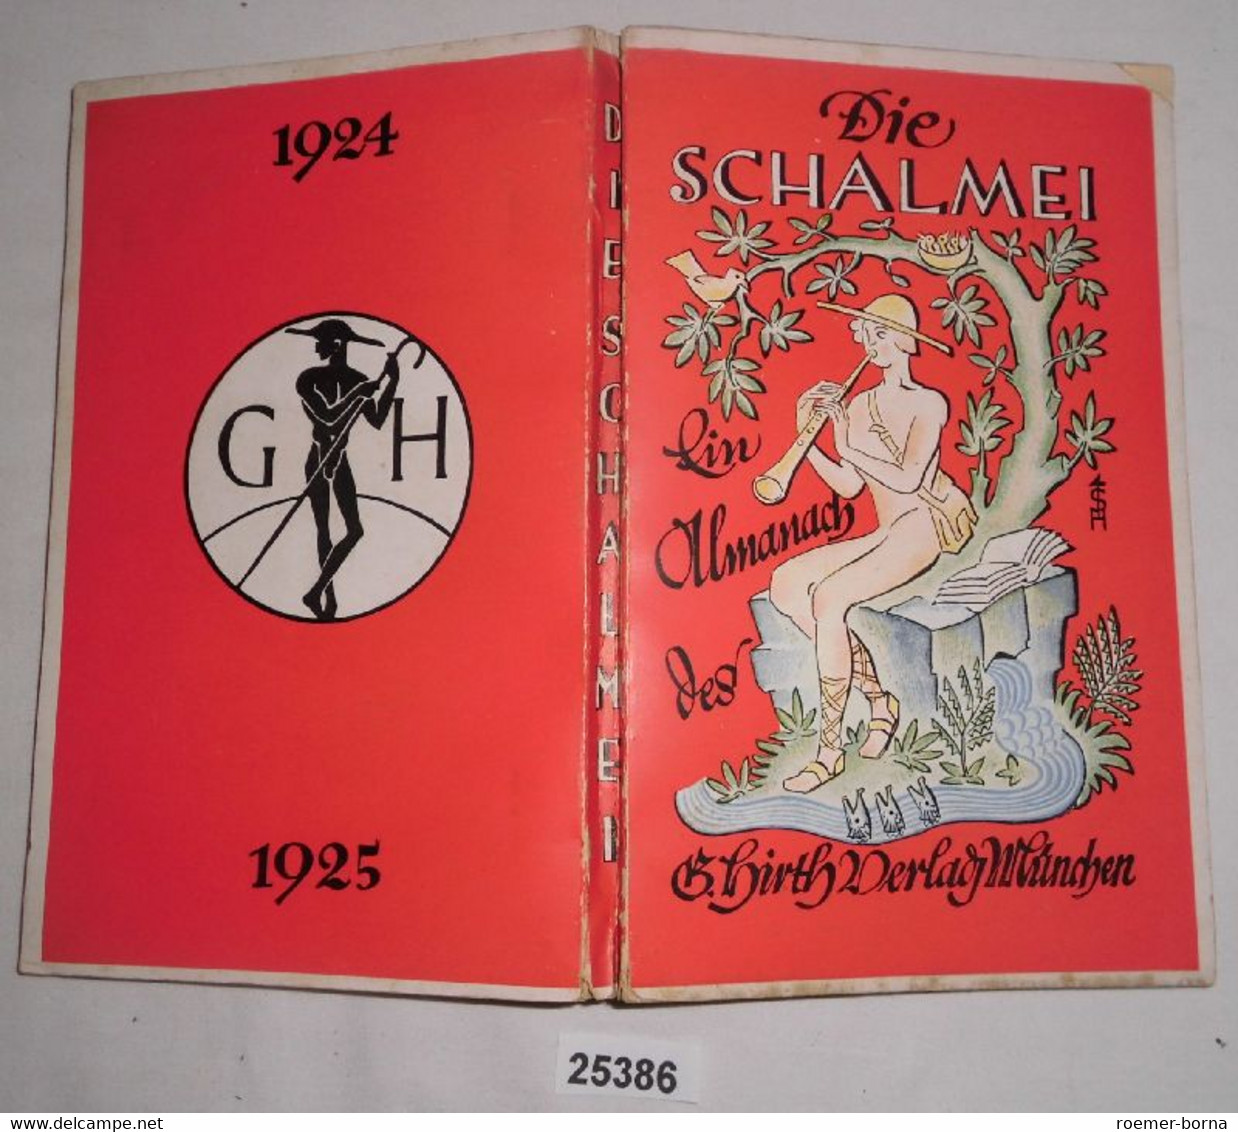 Die Schalmei - Ein Almanach - Calendars